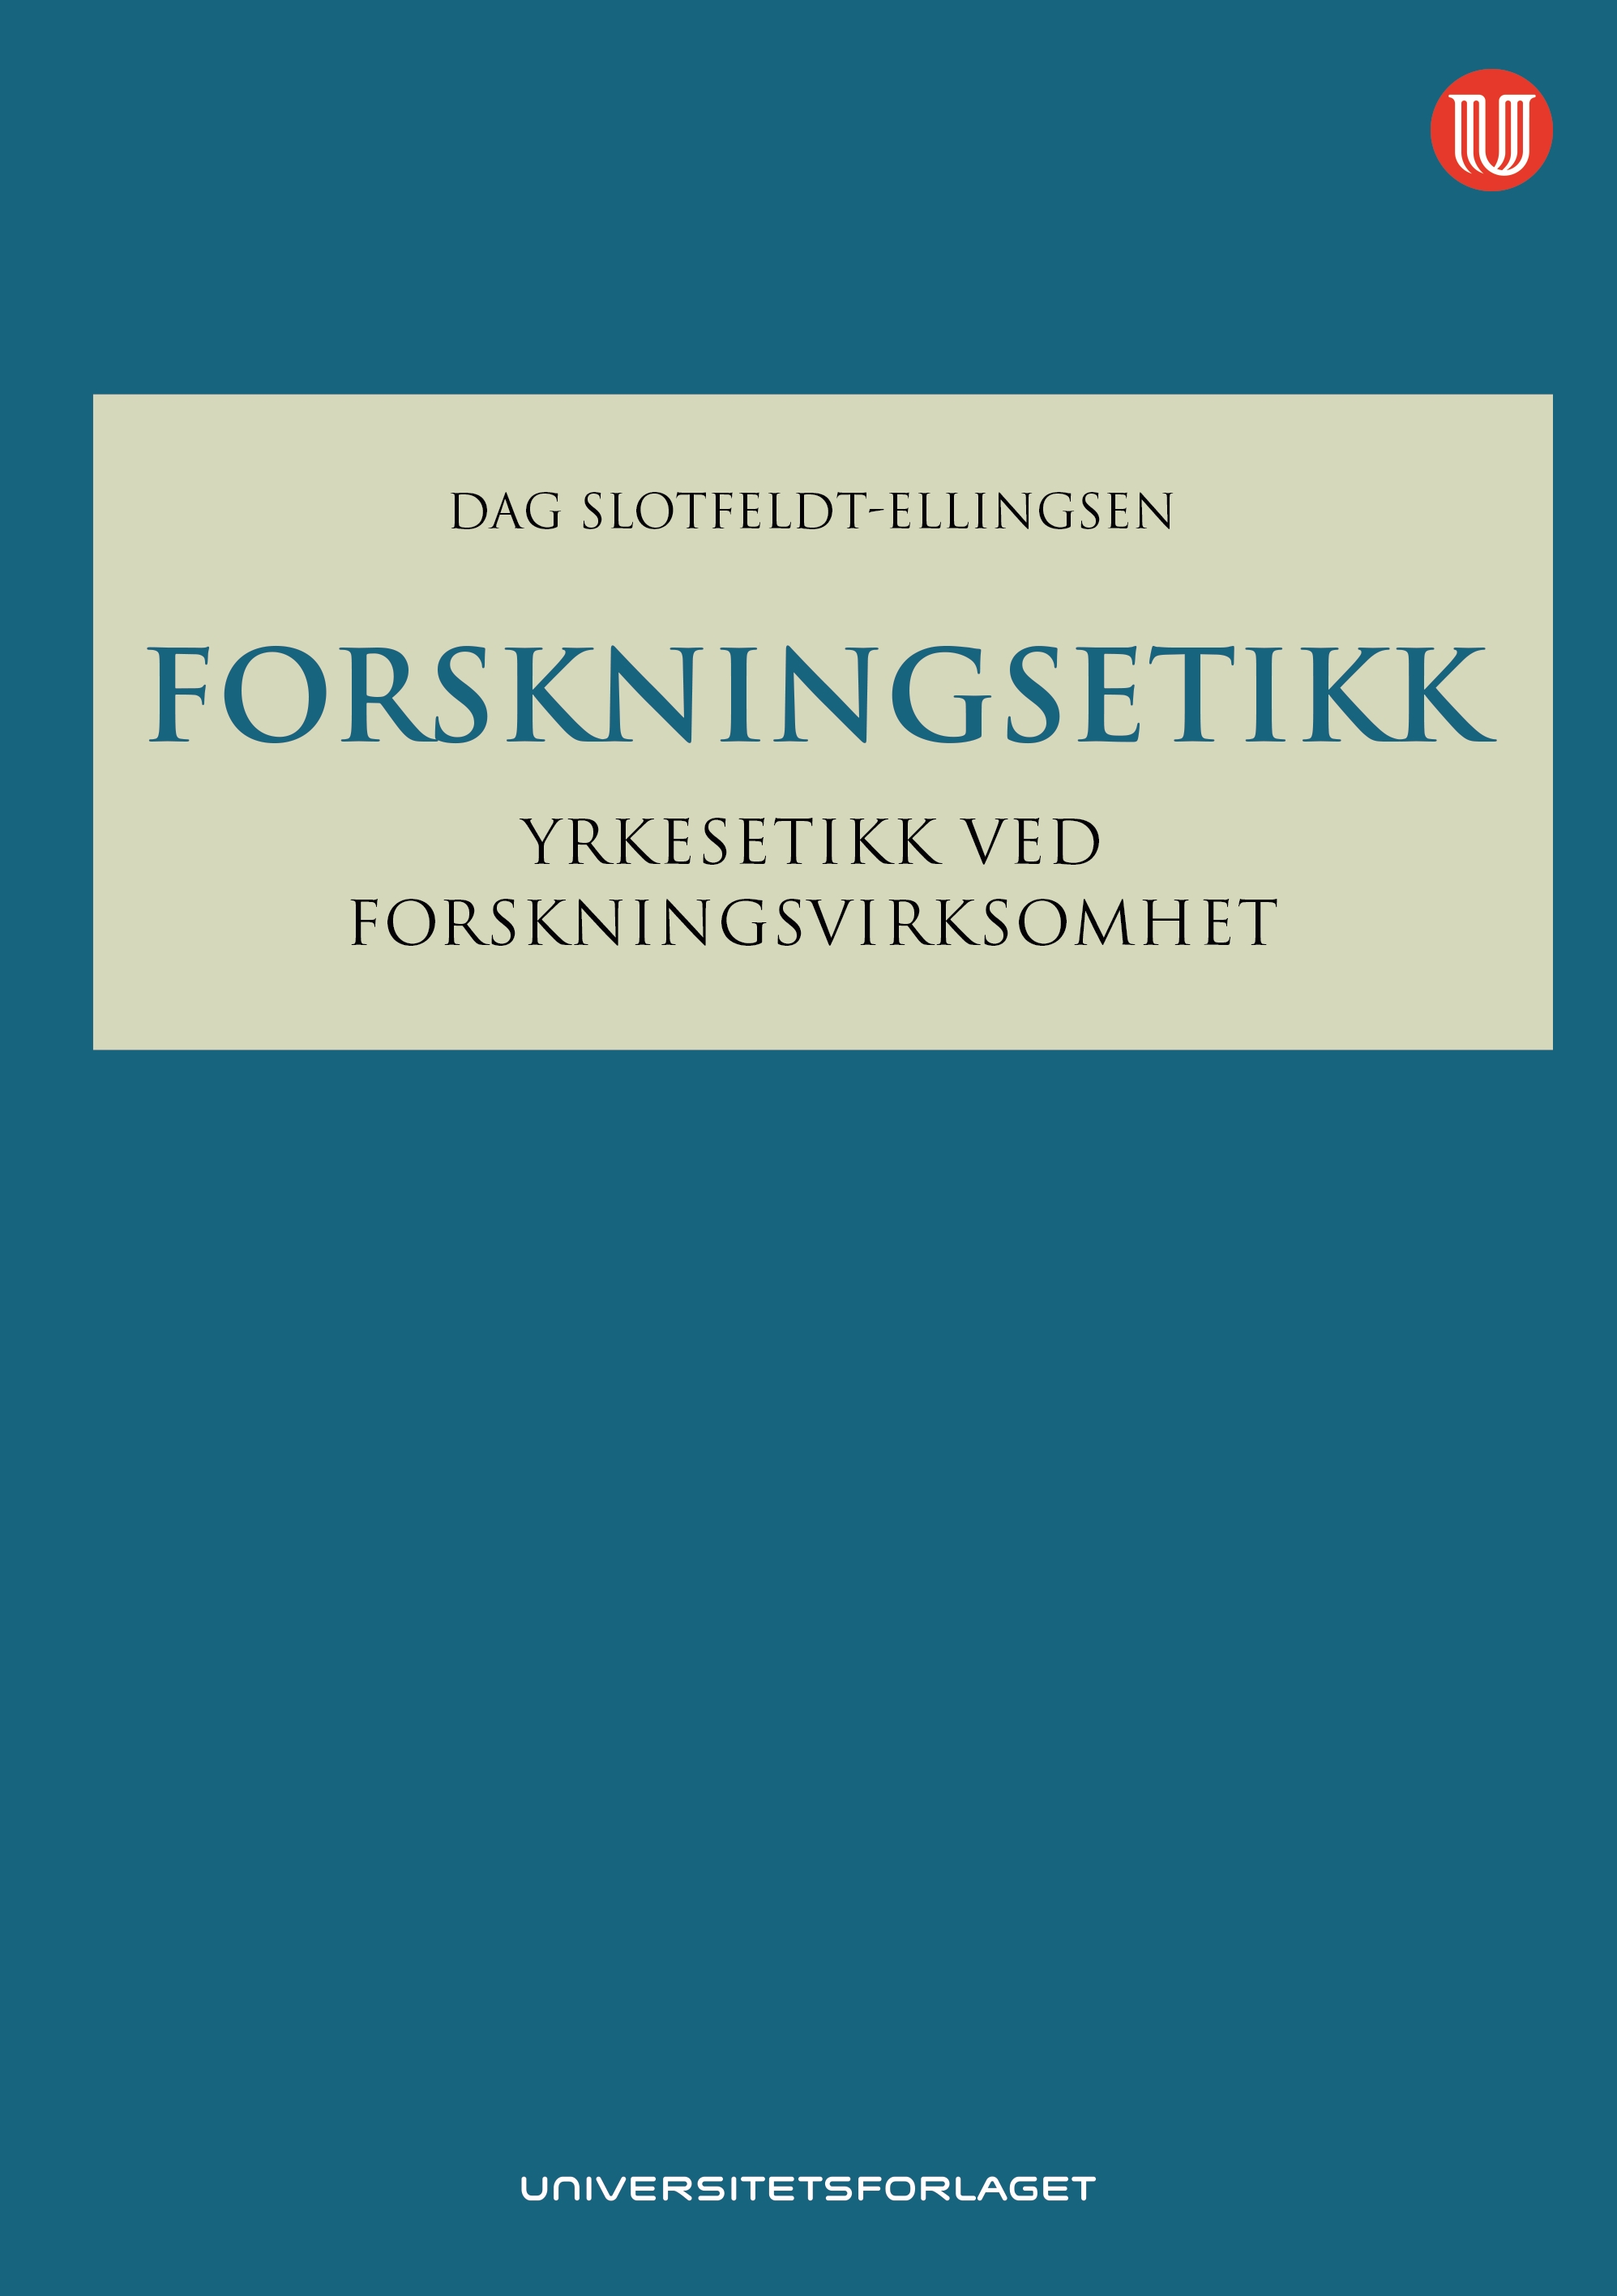 Bokomtale_Forskningsetikk av Dag Slotfeldt Ellingsen.jpg